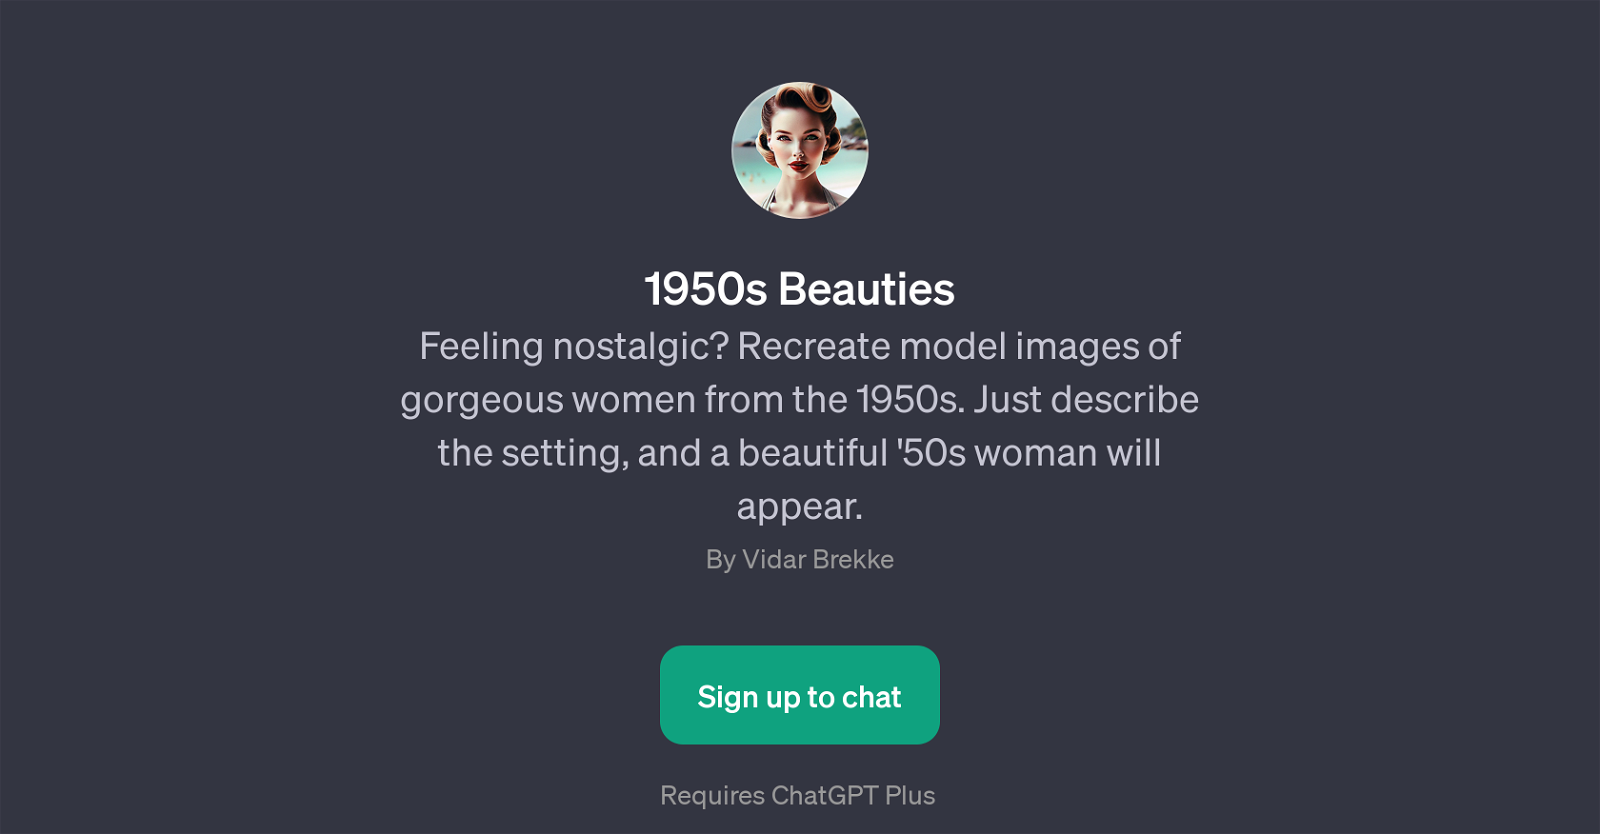 1950s Beauties website